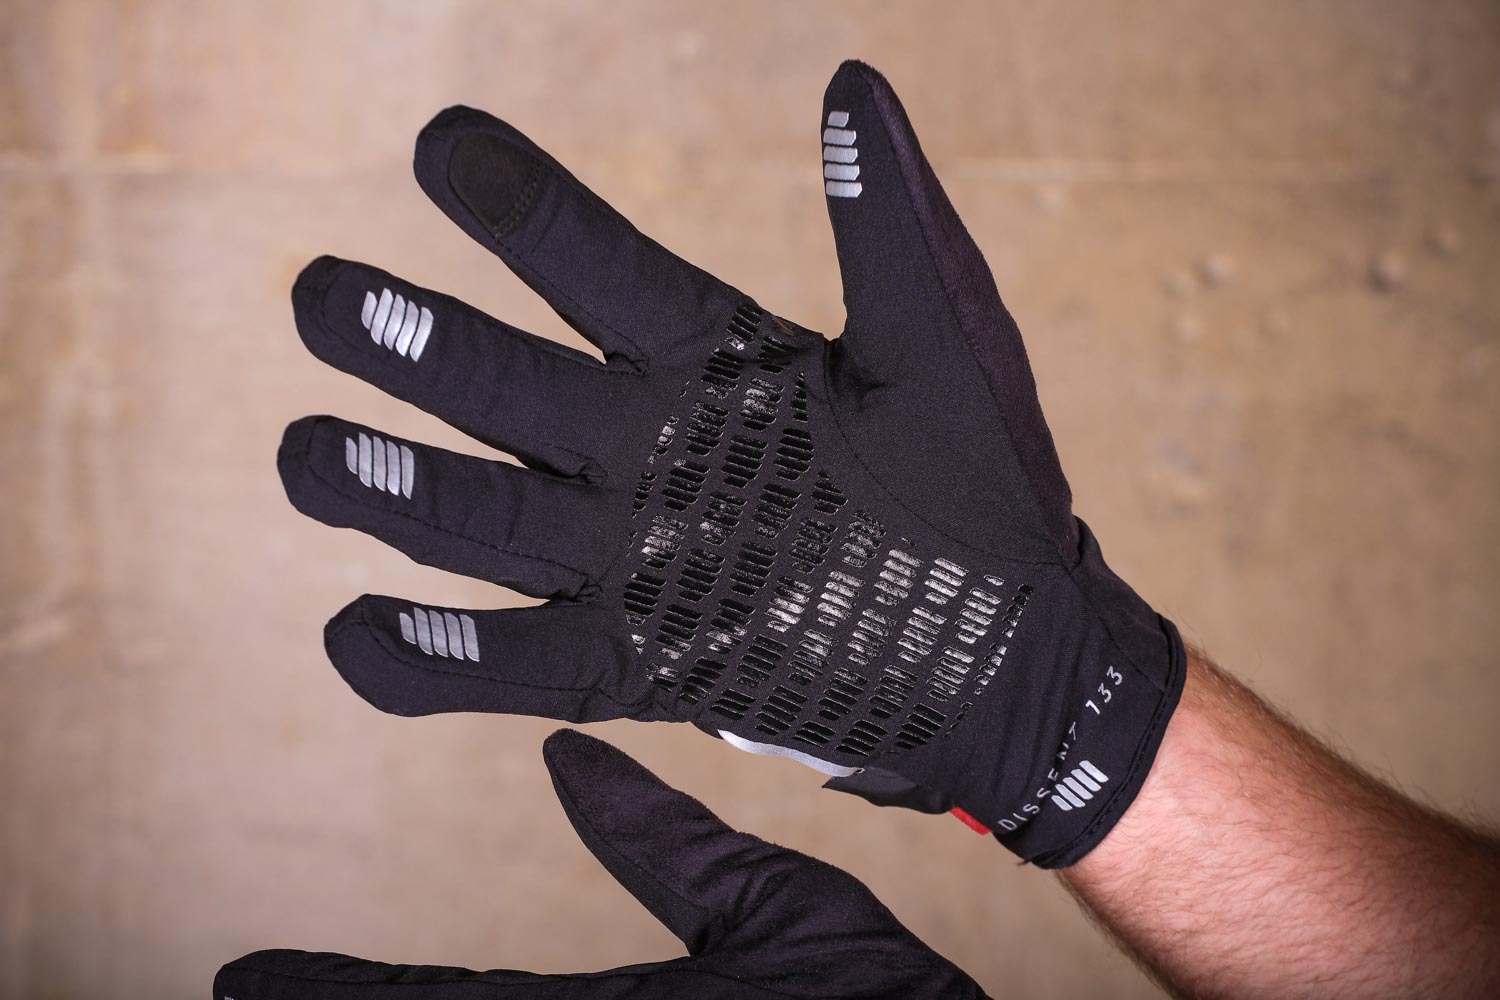 dissent 133 gloves